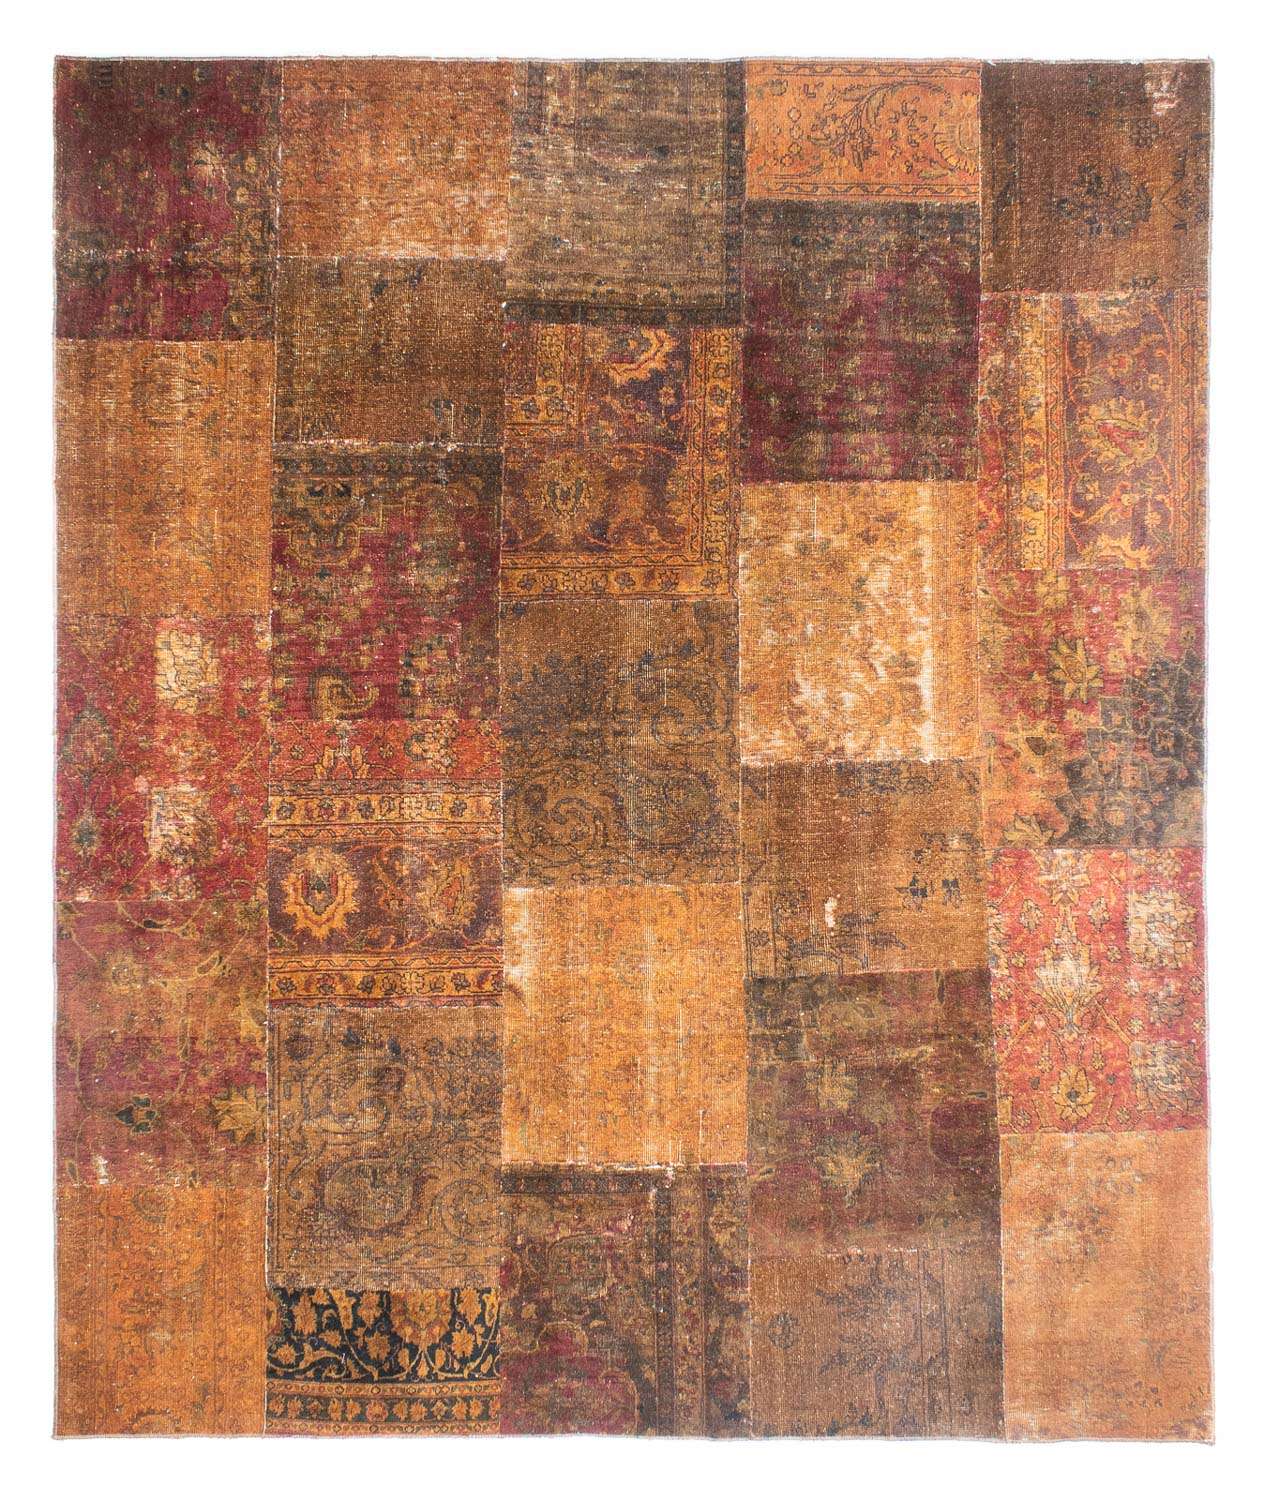 Dywan patchworkowy - 296 x 246 cm - wielokolorowy